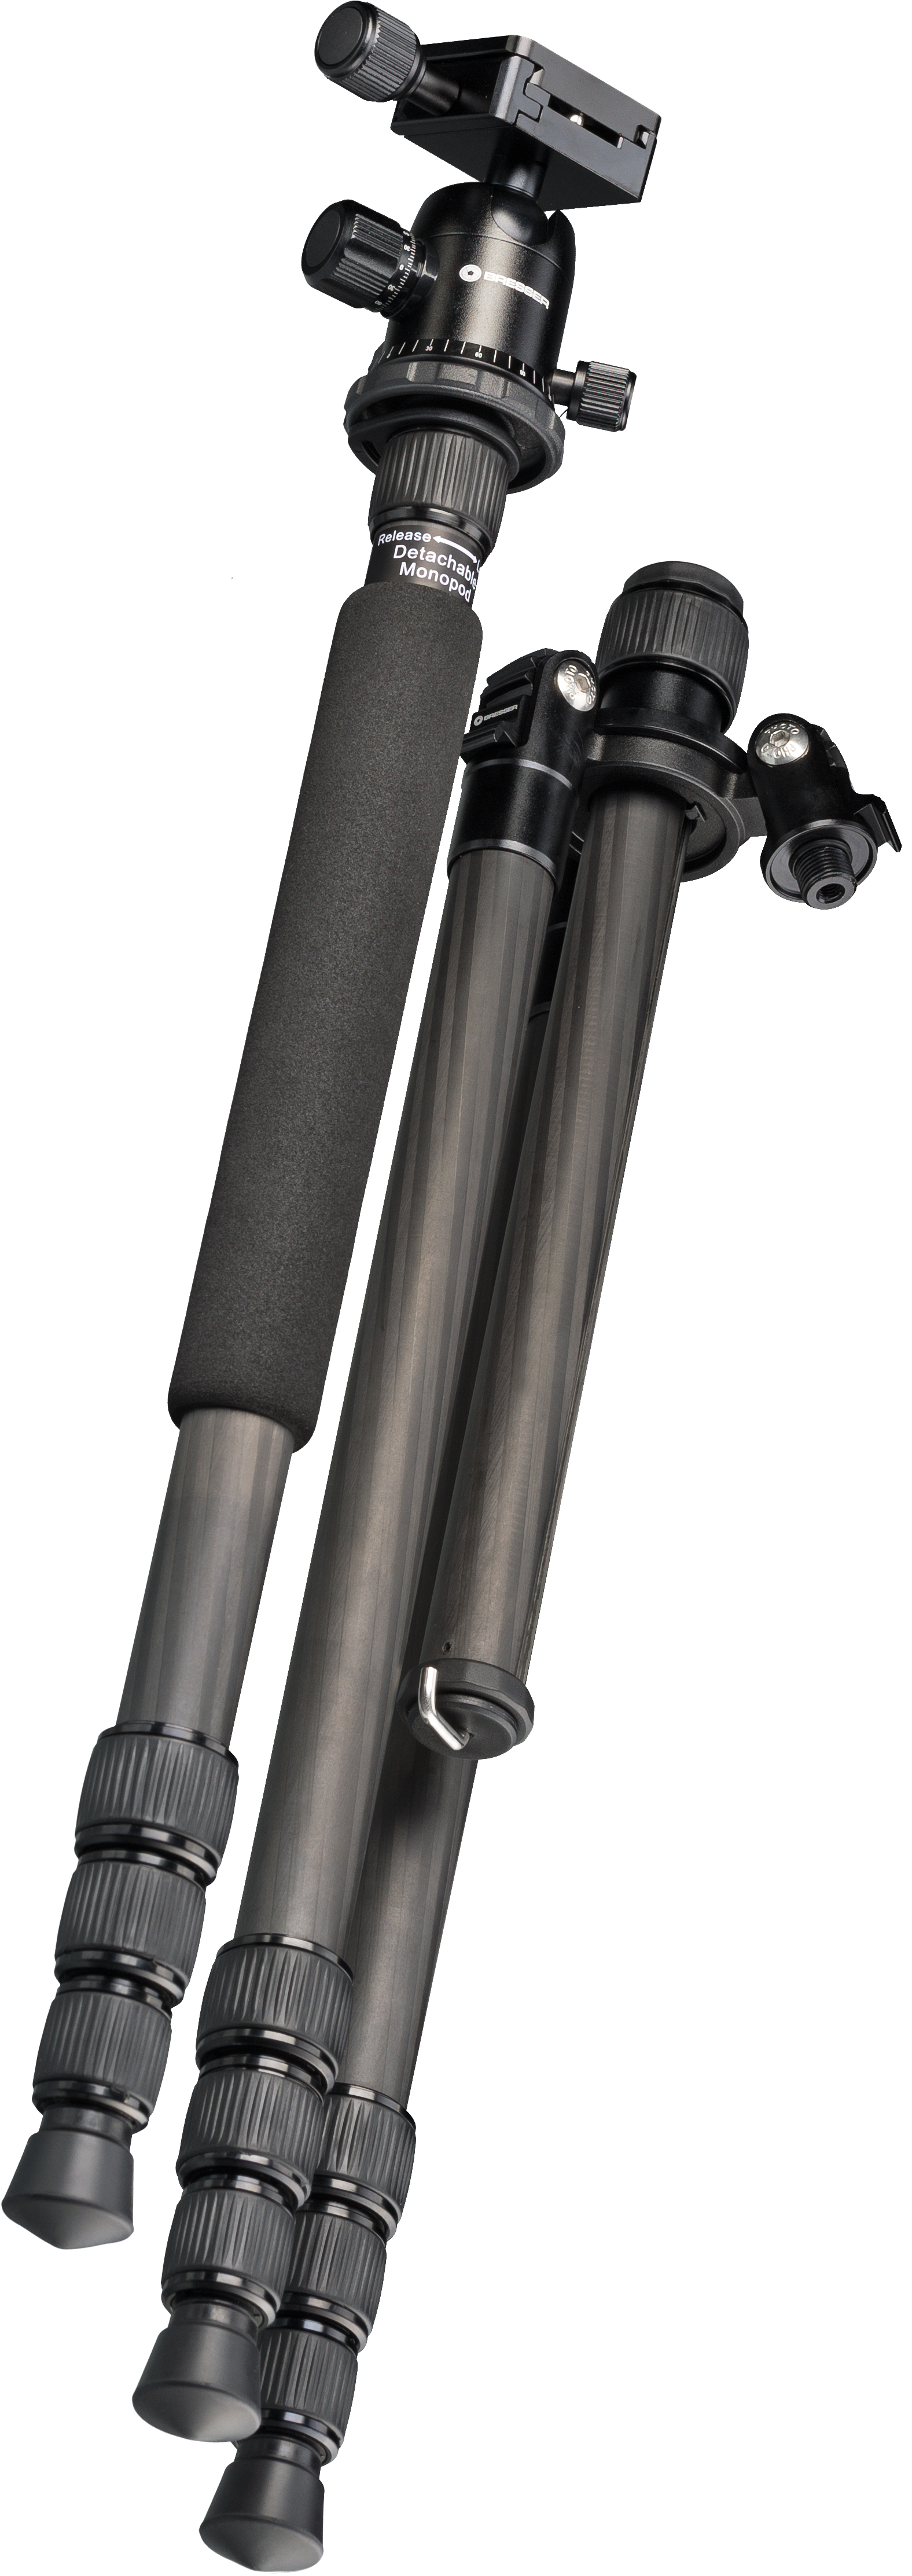 BRESSER BR-2504X8C-B1 Carbon Kamerastativ bis 10 kg verwendbar als Dreibein-, Einbein- und Bodenstativ